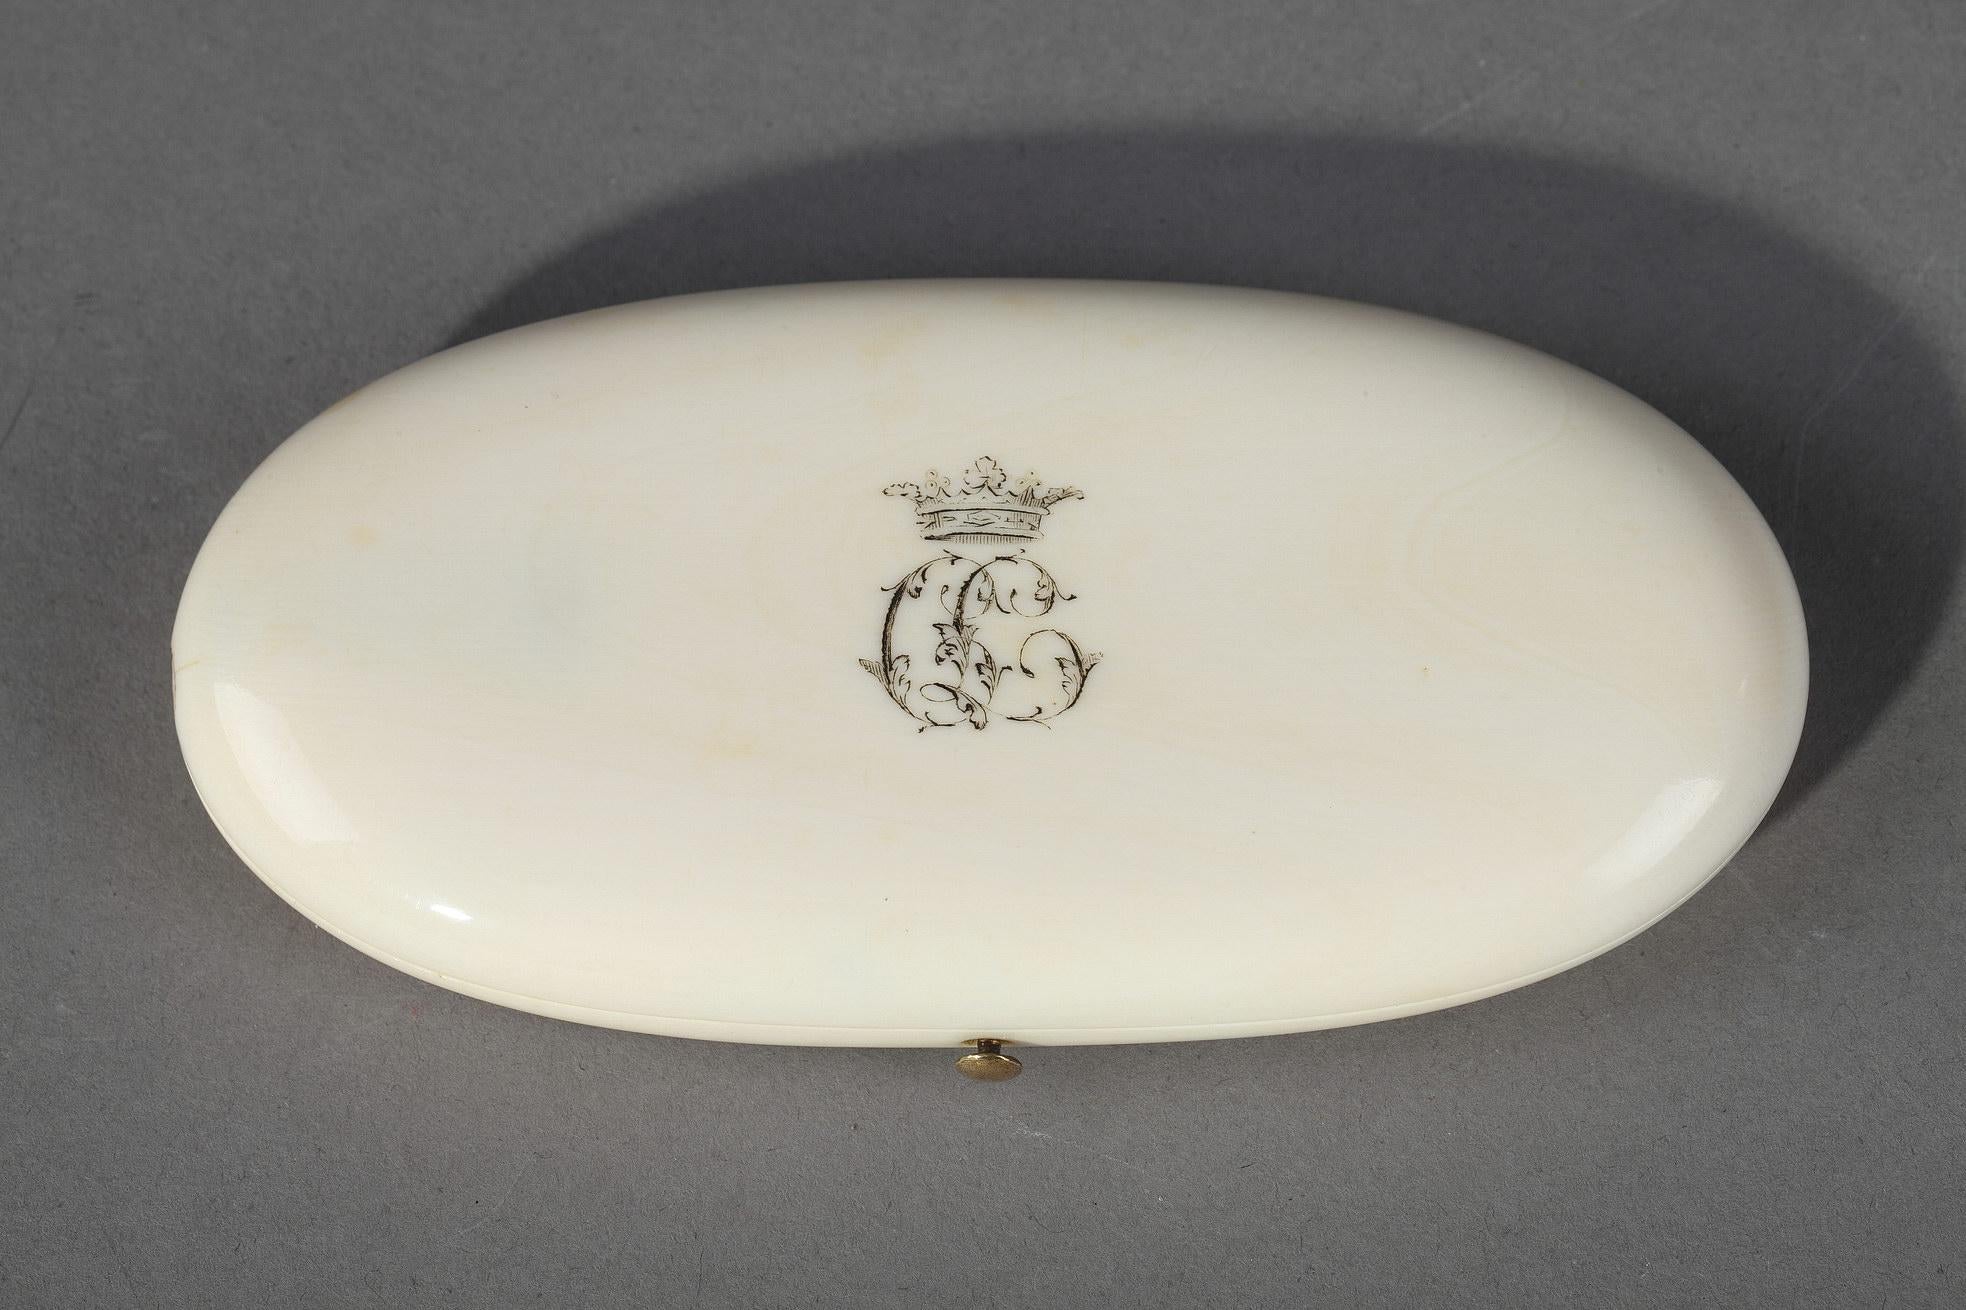 Boîte à couture ovale de la fin du XIXe siècle, décorée d'un monogramme couronné. Le coffret contient cinq ustensiles de couture en or et en acier, ornés de petites fleurs. Étiqueté à l'intérieur : AUCOC A PARIS. Poids : 27,6 g,

vers